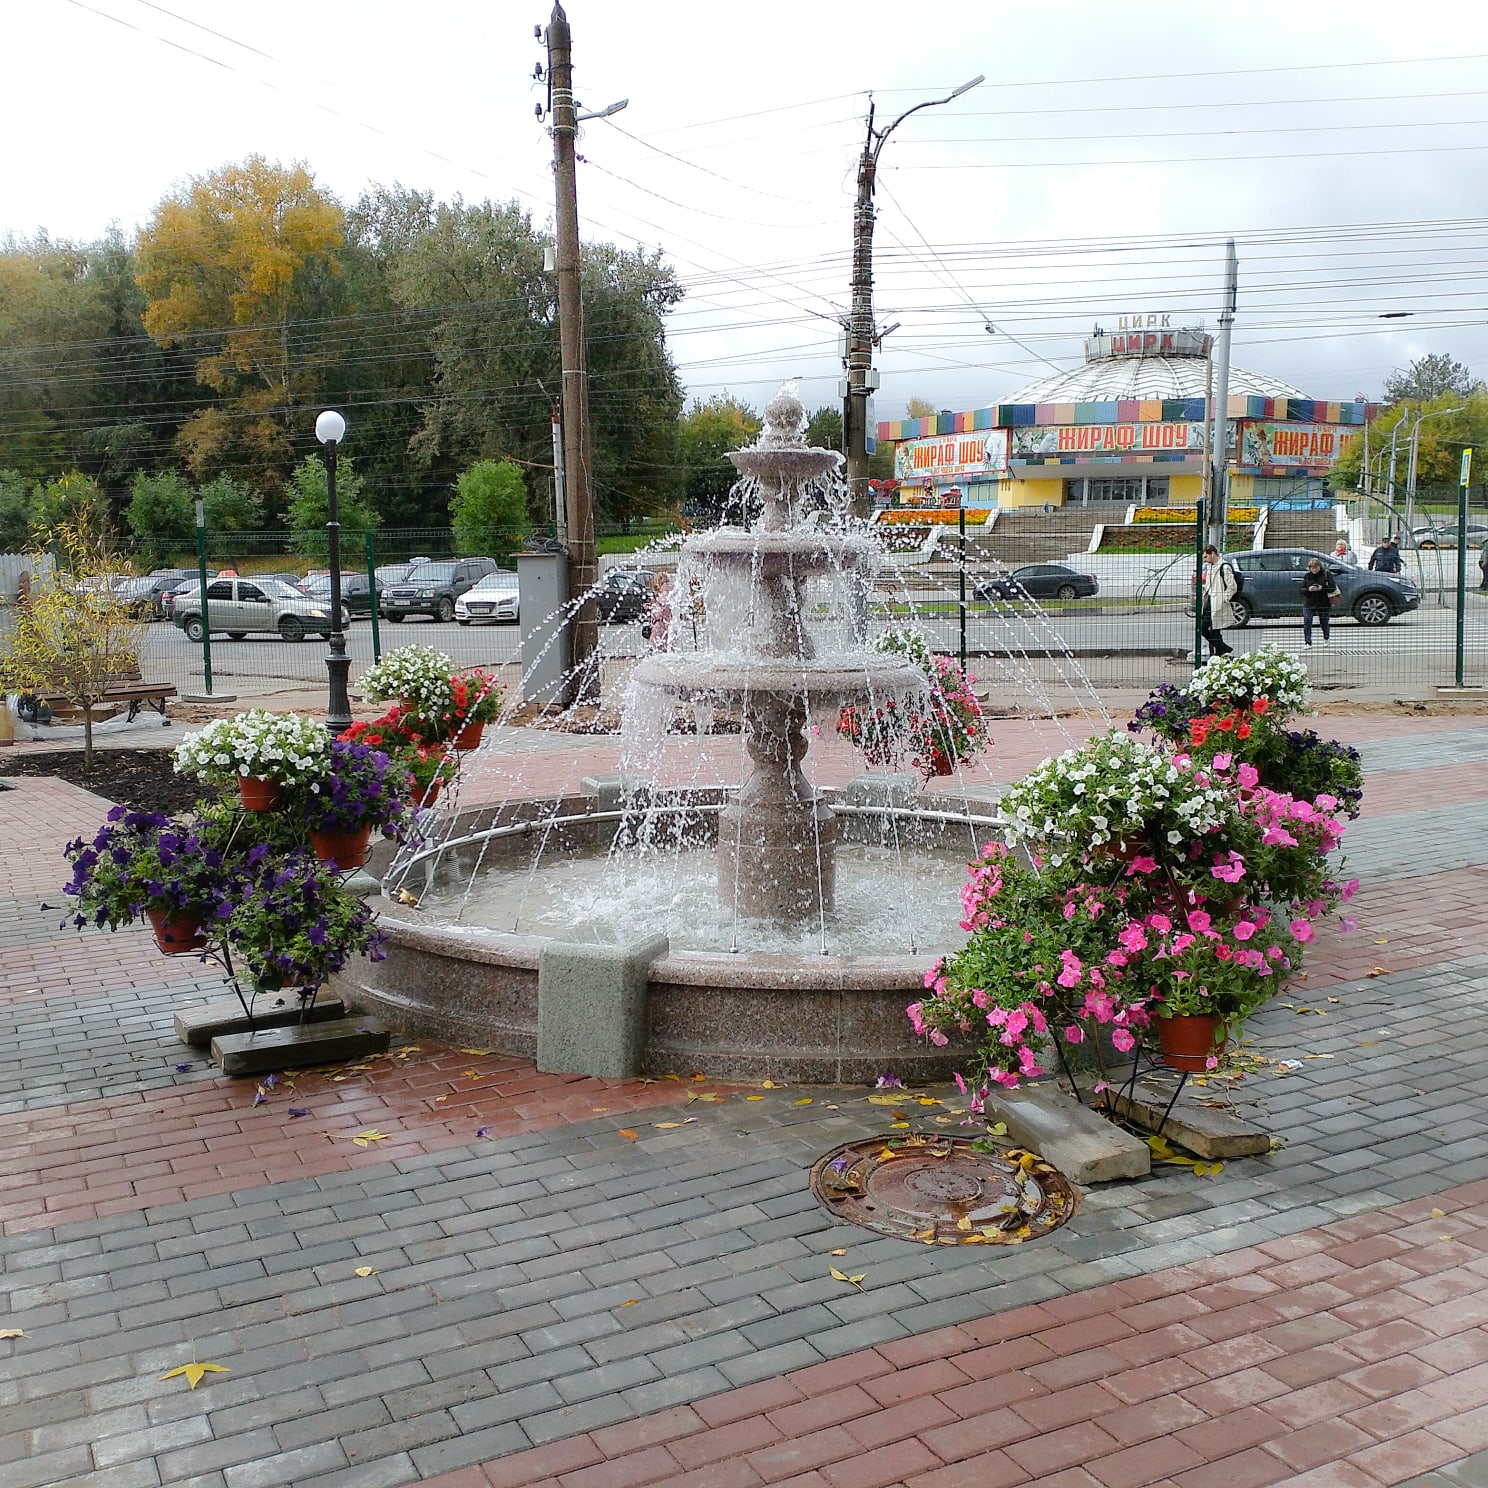 На Октябрьском проспекте в Кирове появился новый фонтан